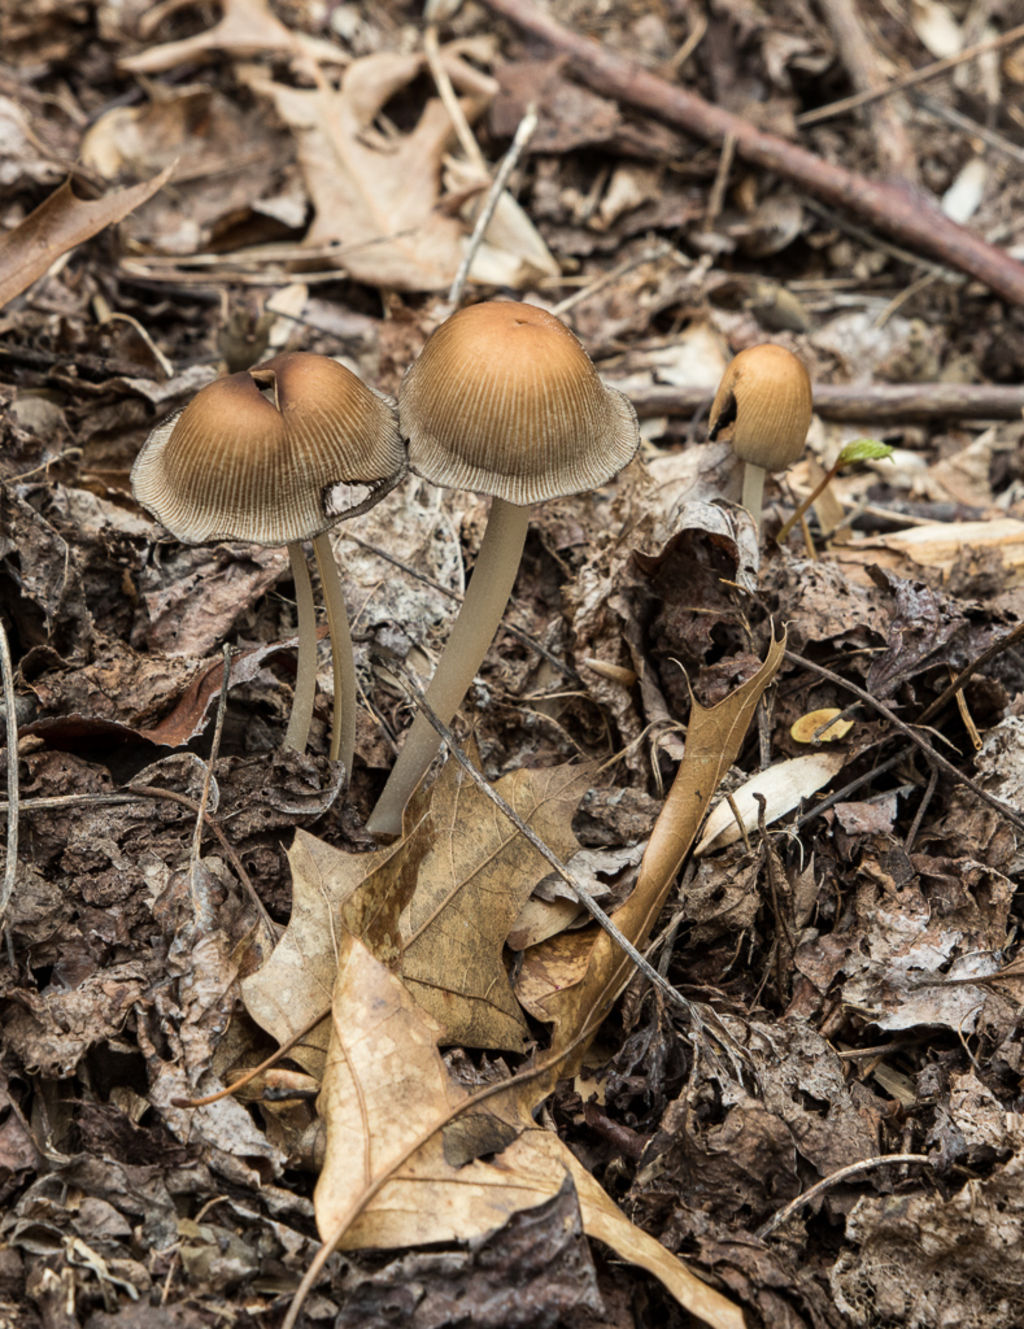 Strip District Mushroom Hunt